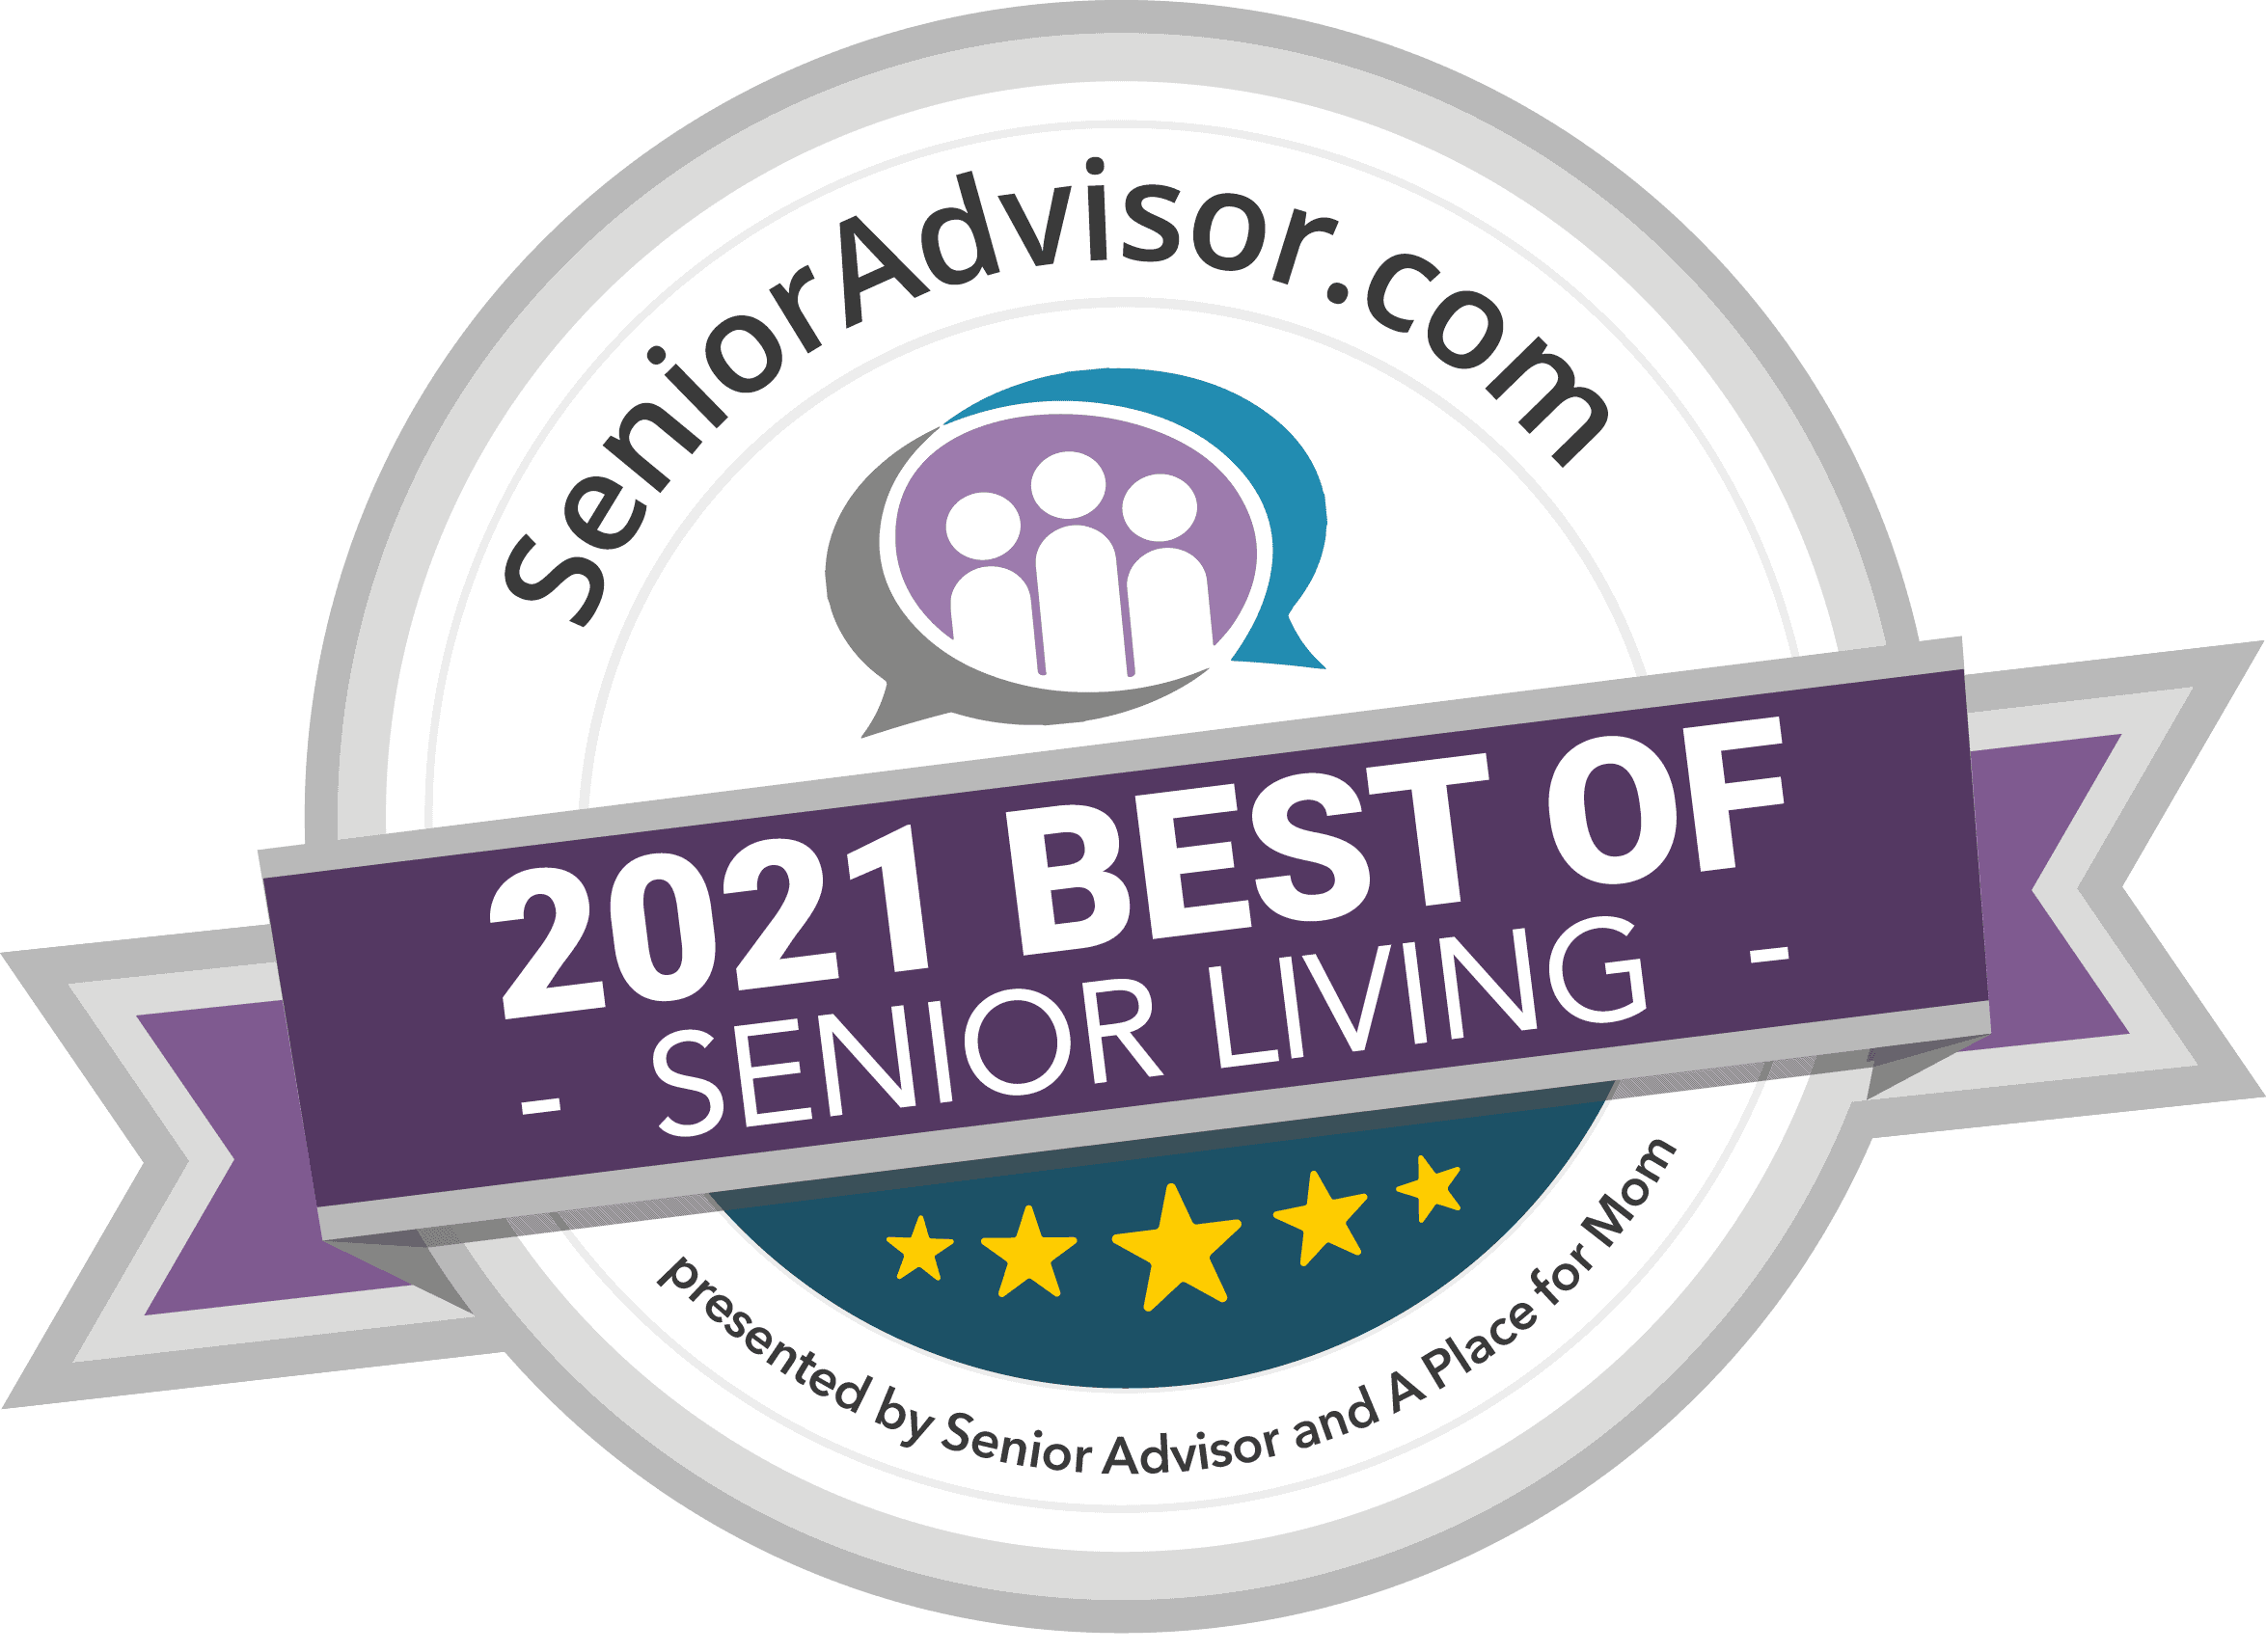 Senioradvisor.com 2021 Best of Senior Living award logo